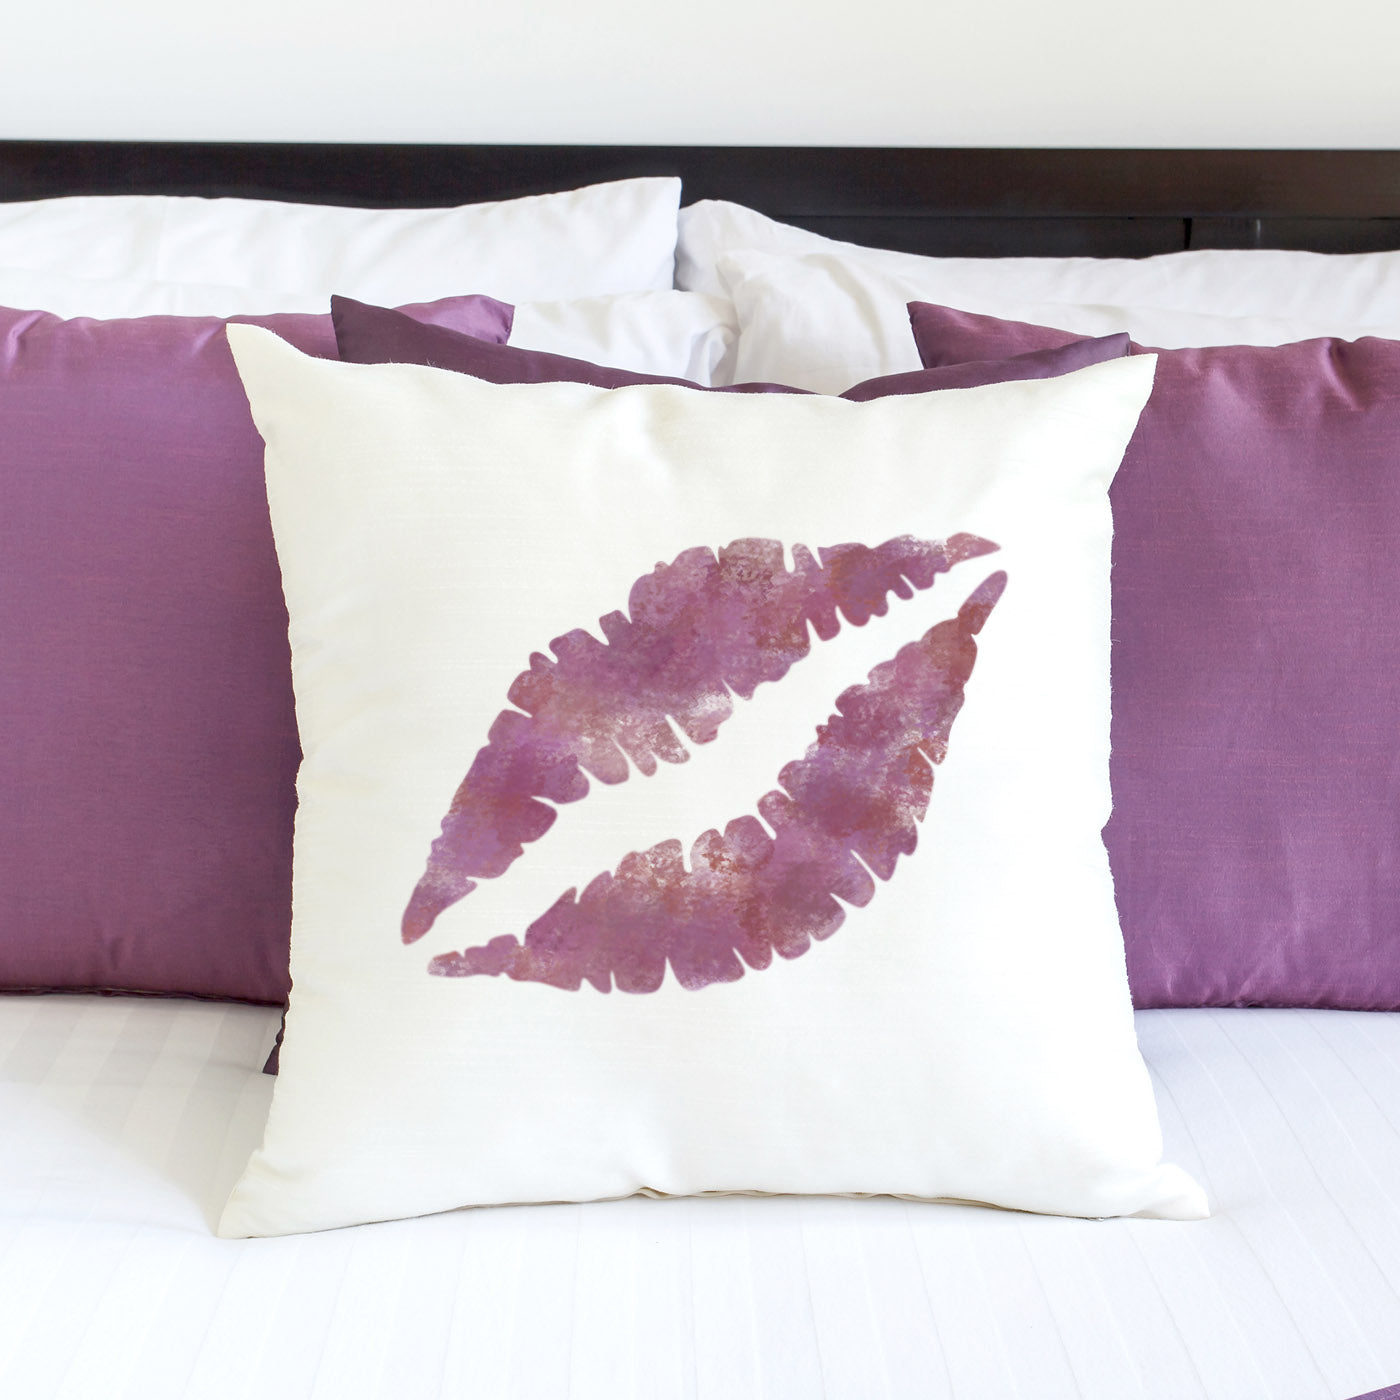 CraftStar Lip Print Design Stencilled onto Pillow